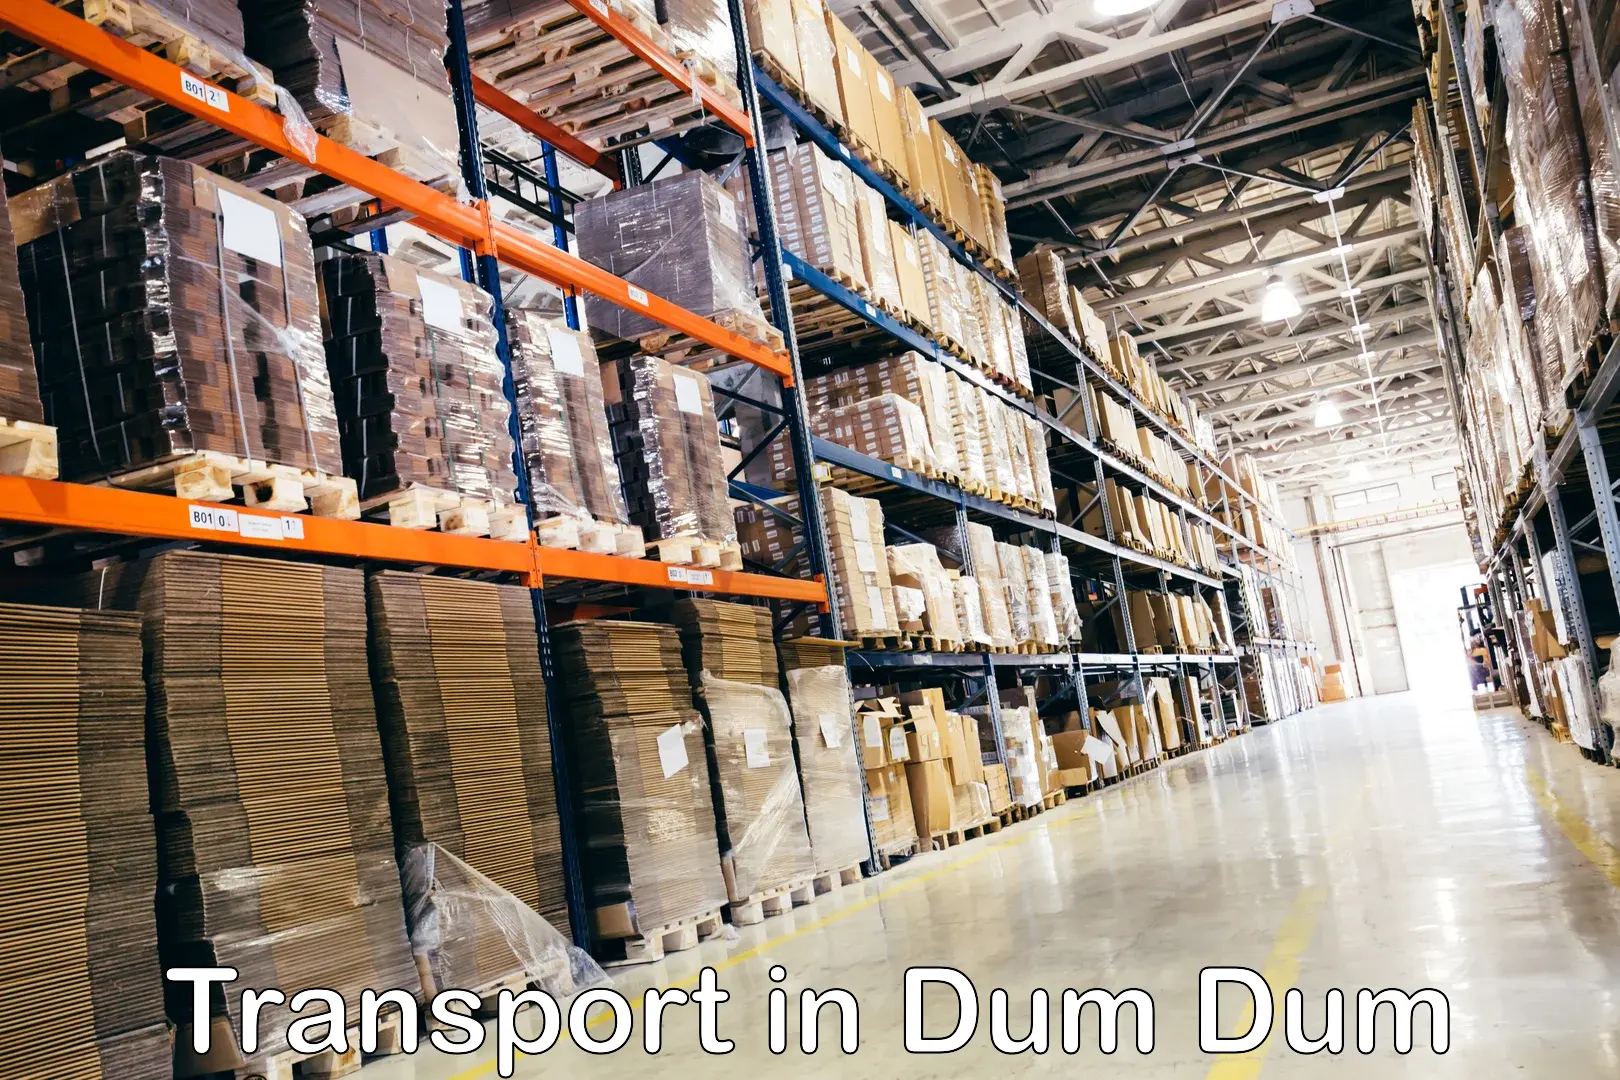 Lorry transport service in Dum Dum